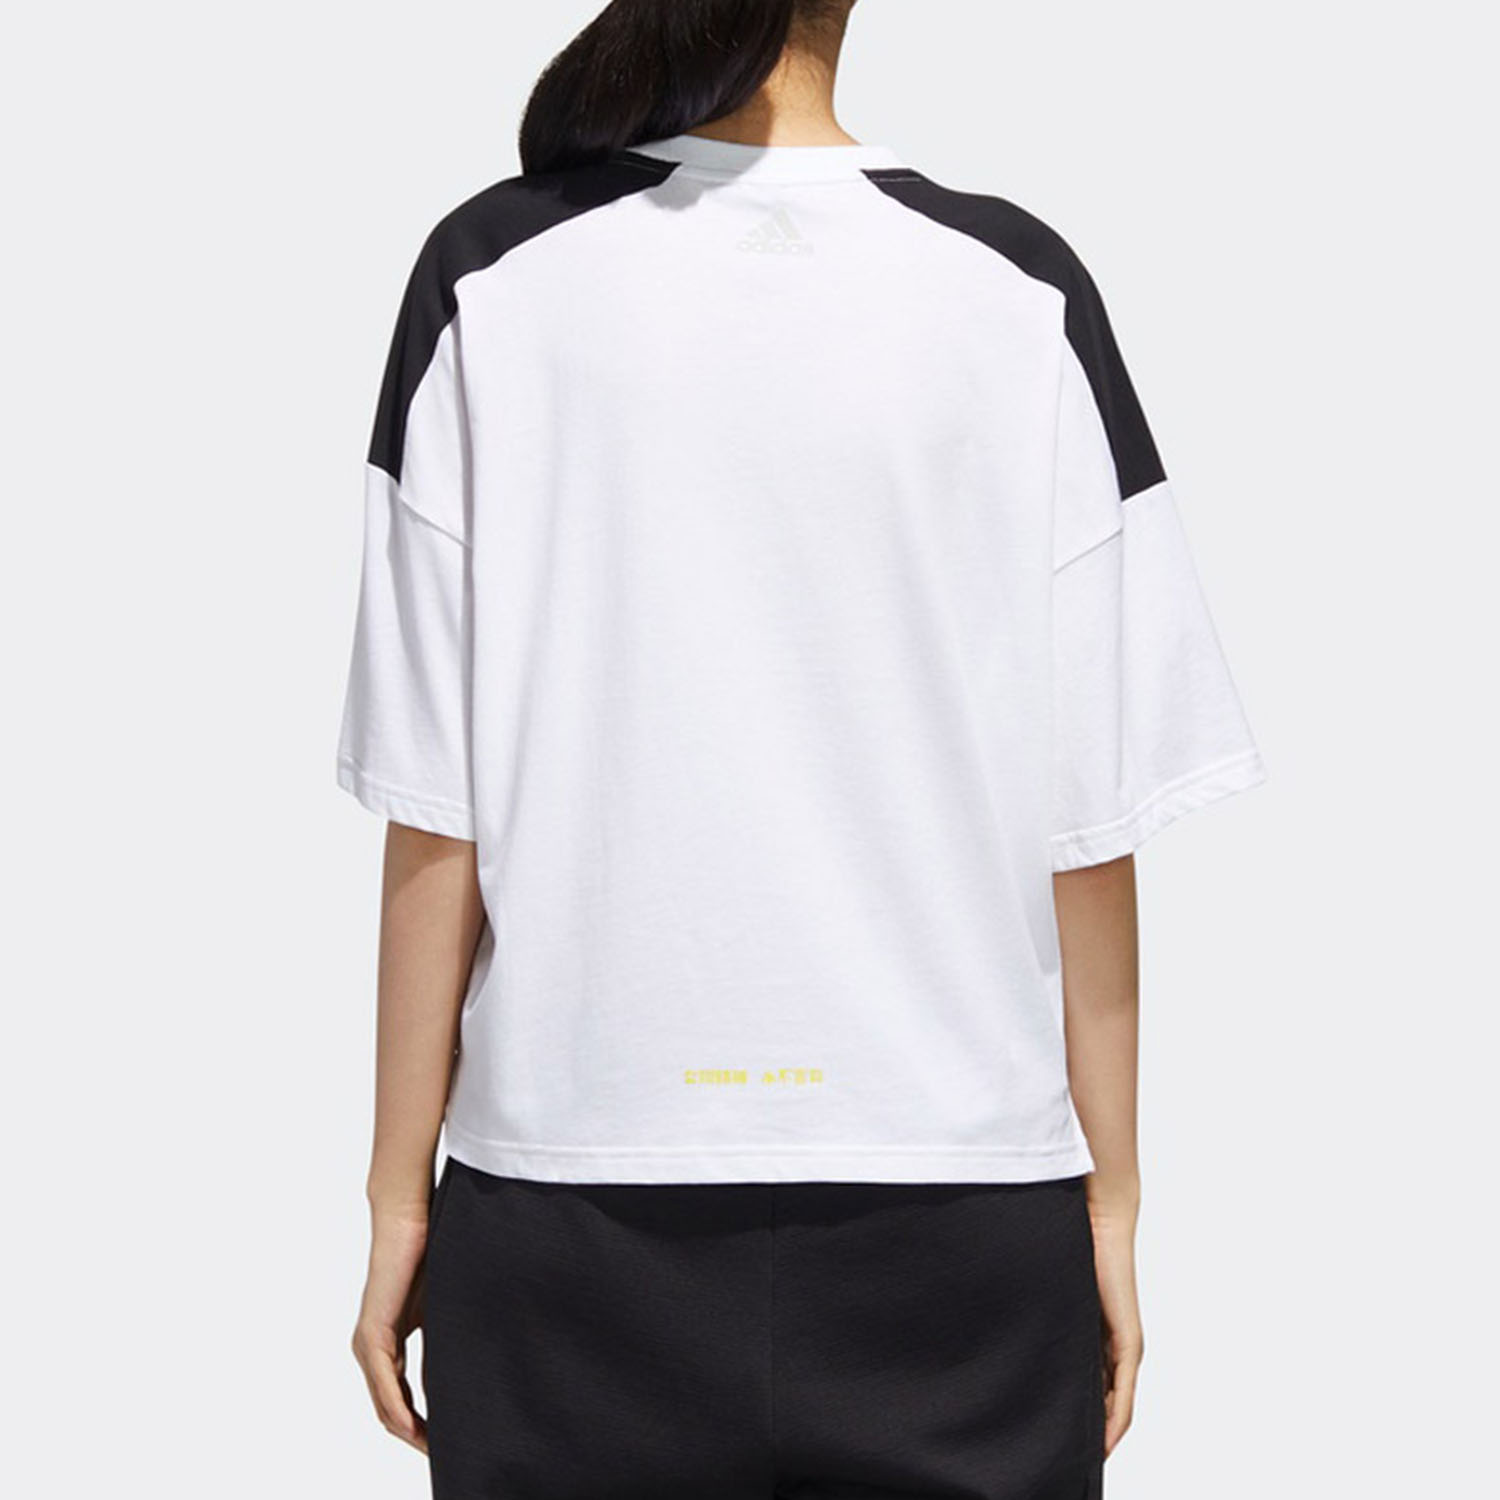 Adidas/阿迪达斯正品 夏季新款女子运动型格短袖T恤 GK8740 - 图2